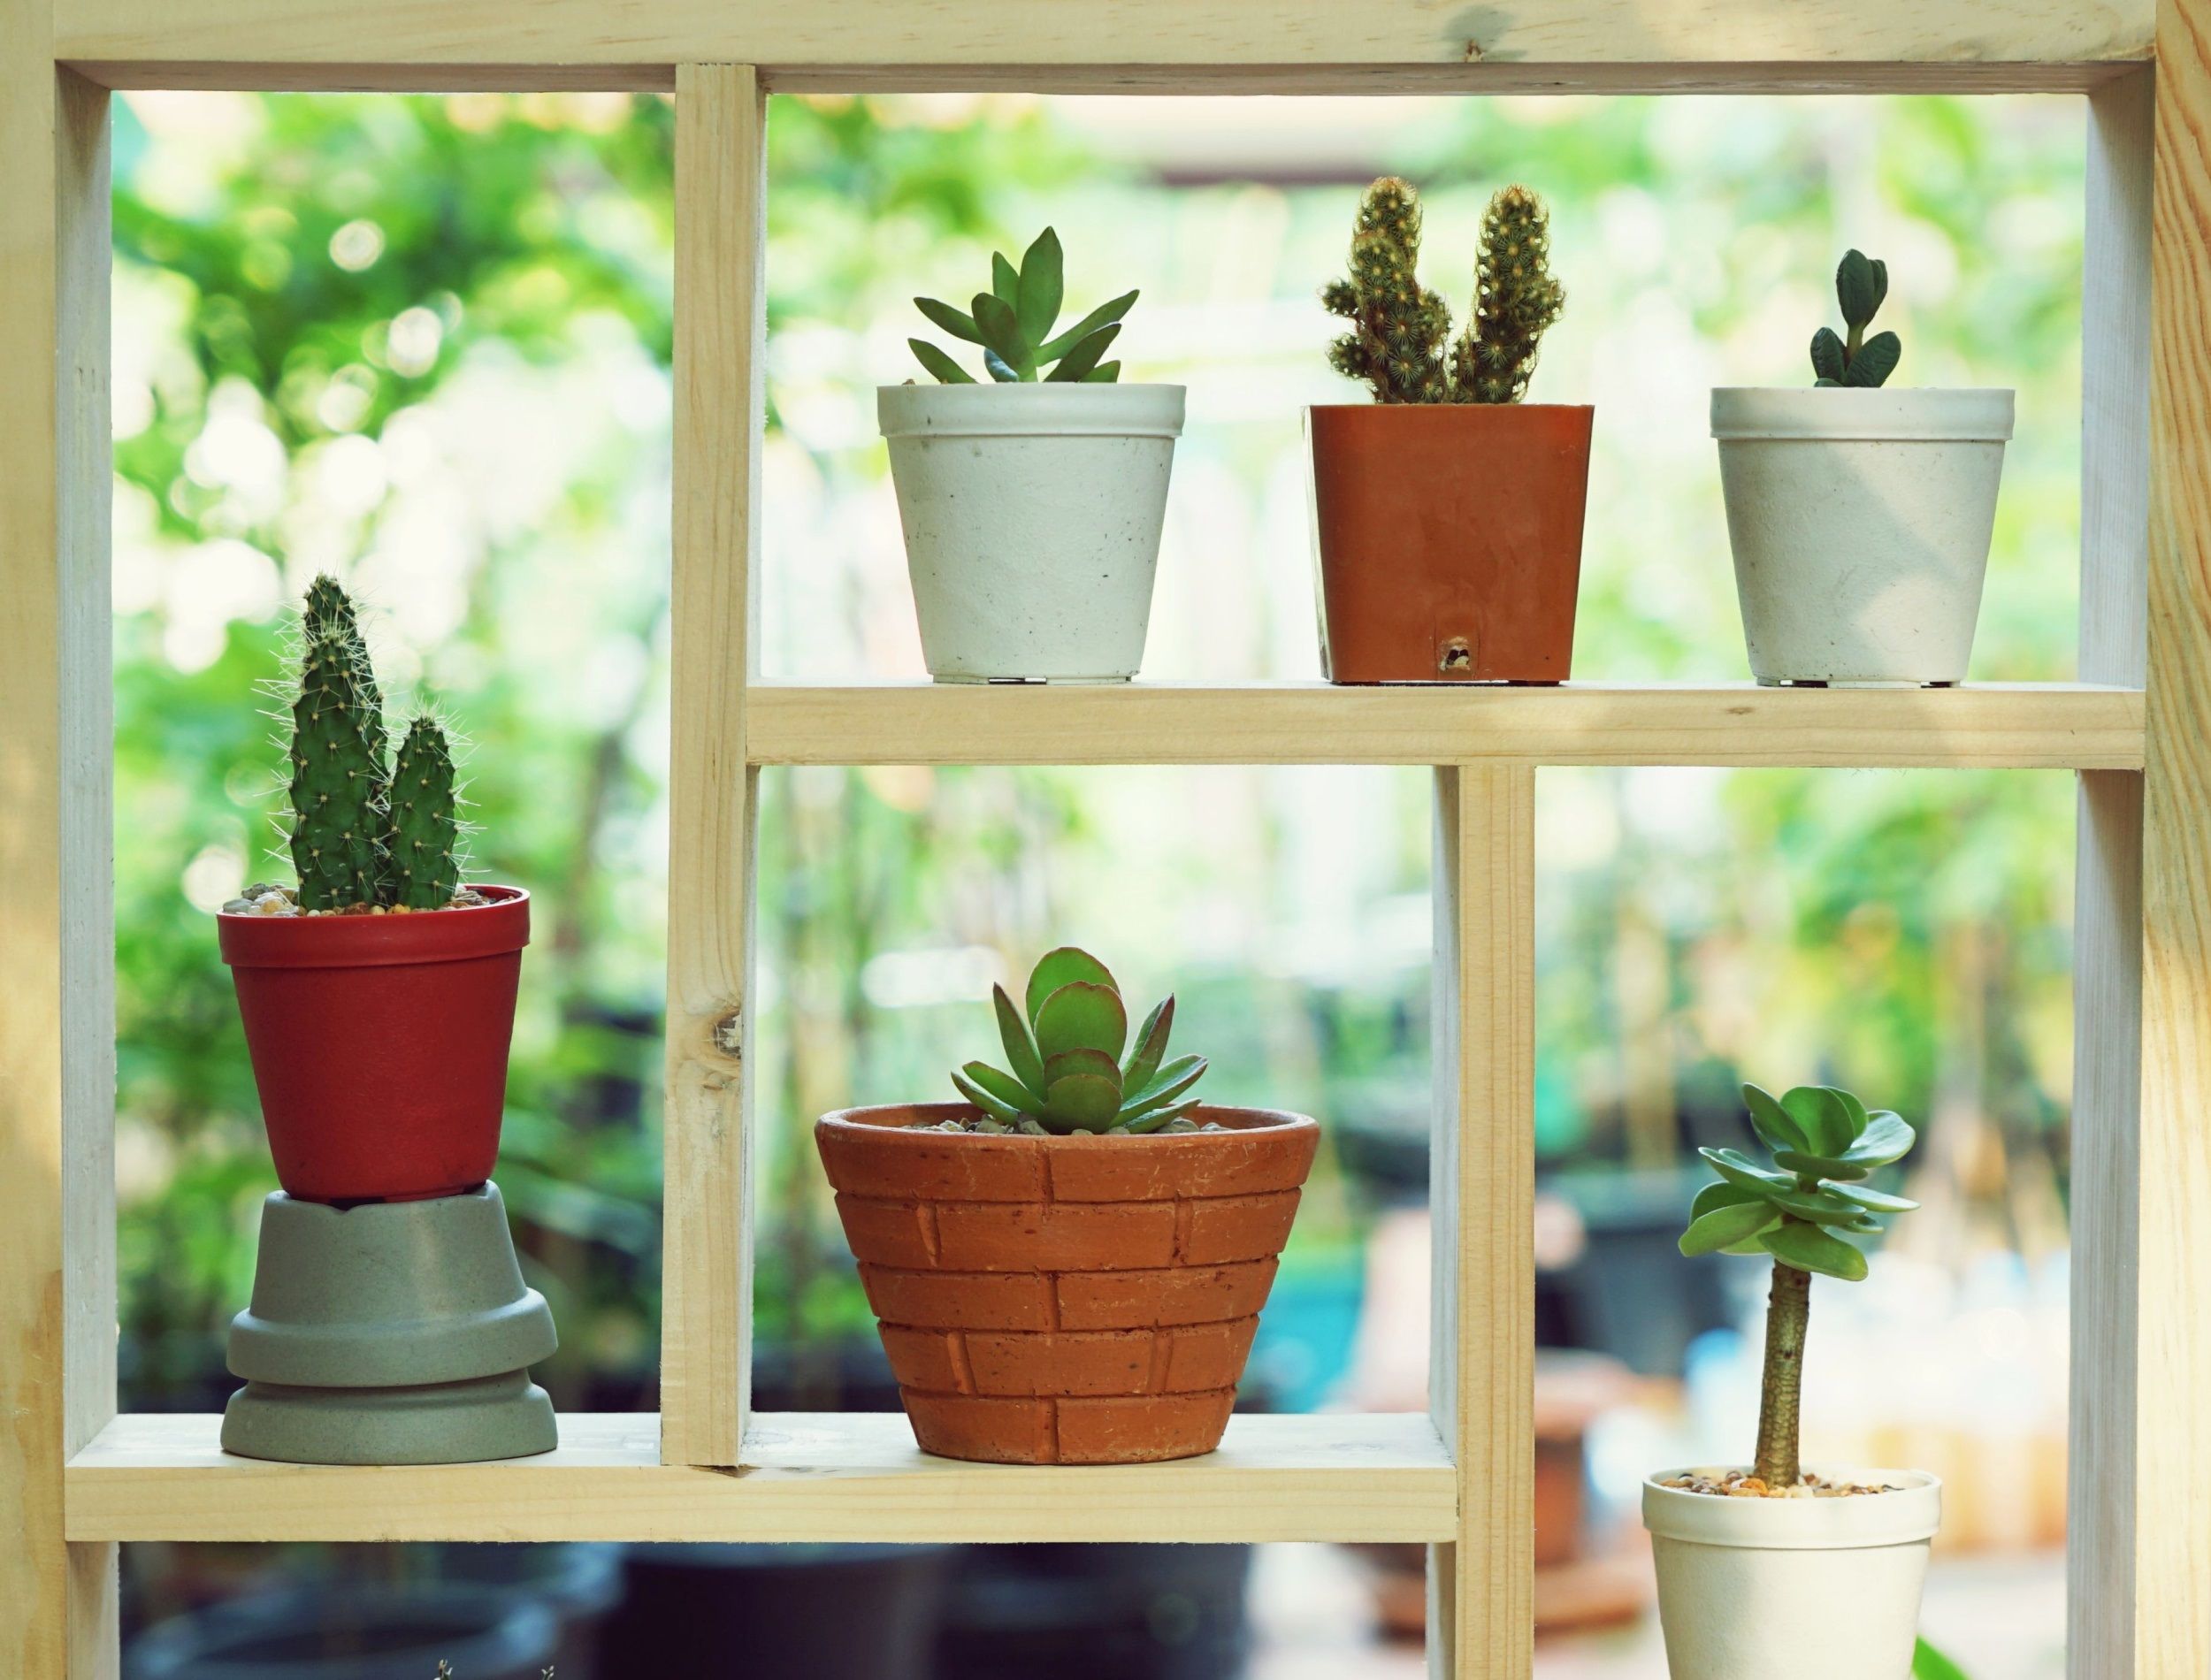 Succulent pot plants window decoration with 1:1 frame ratio